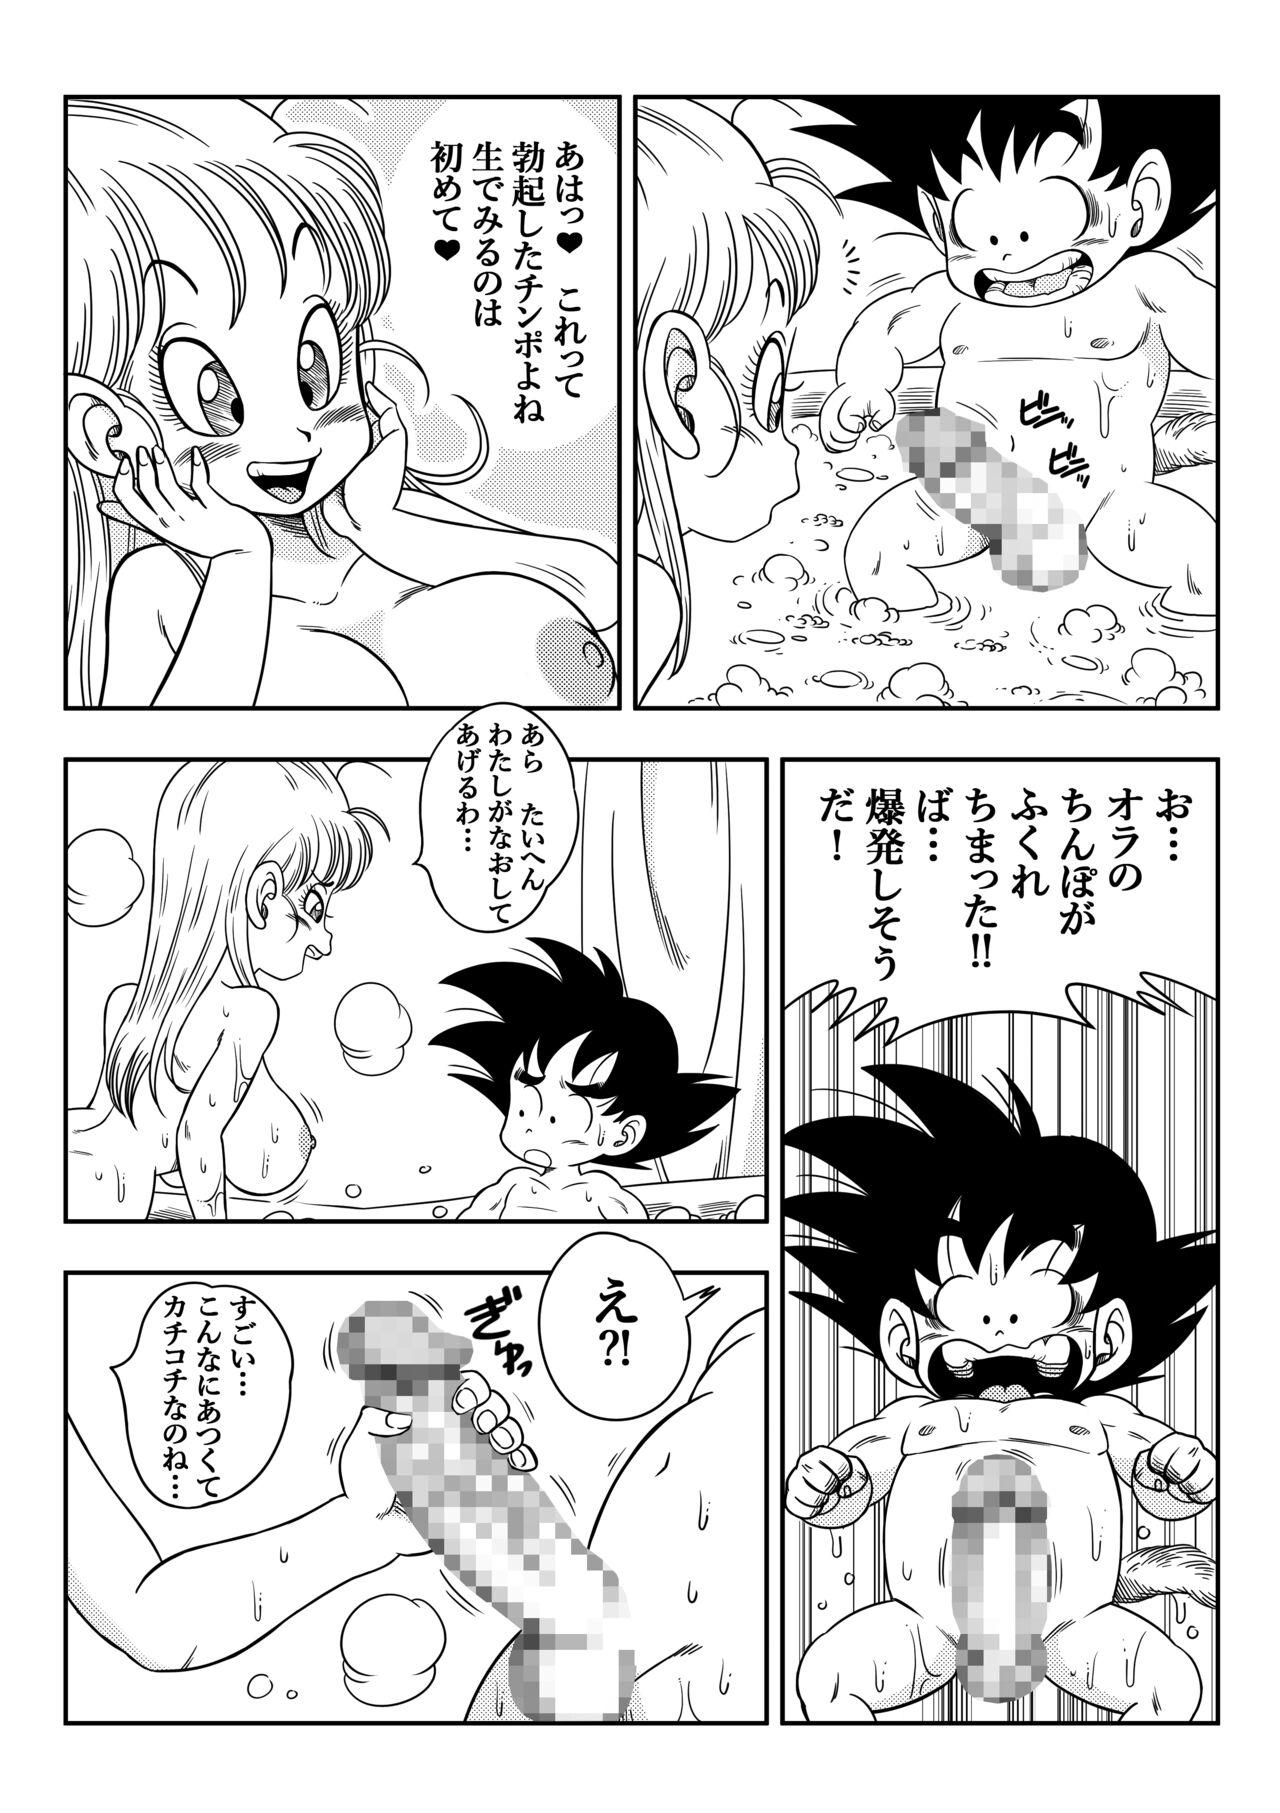 Fodendo Sono Ichi Ofuro de Sex | DAGON BALL episode 1 - Sex in the Bath - Dragon ball Parody - Page 6